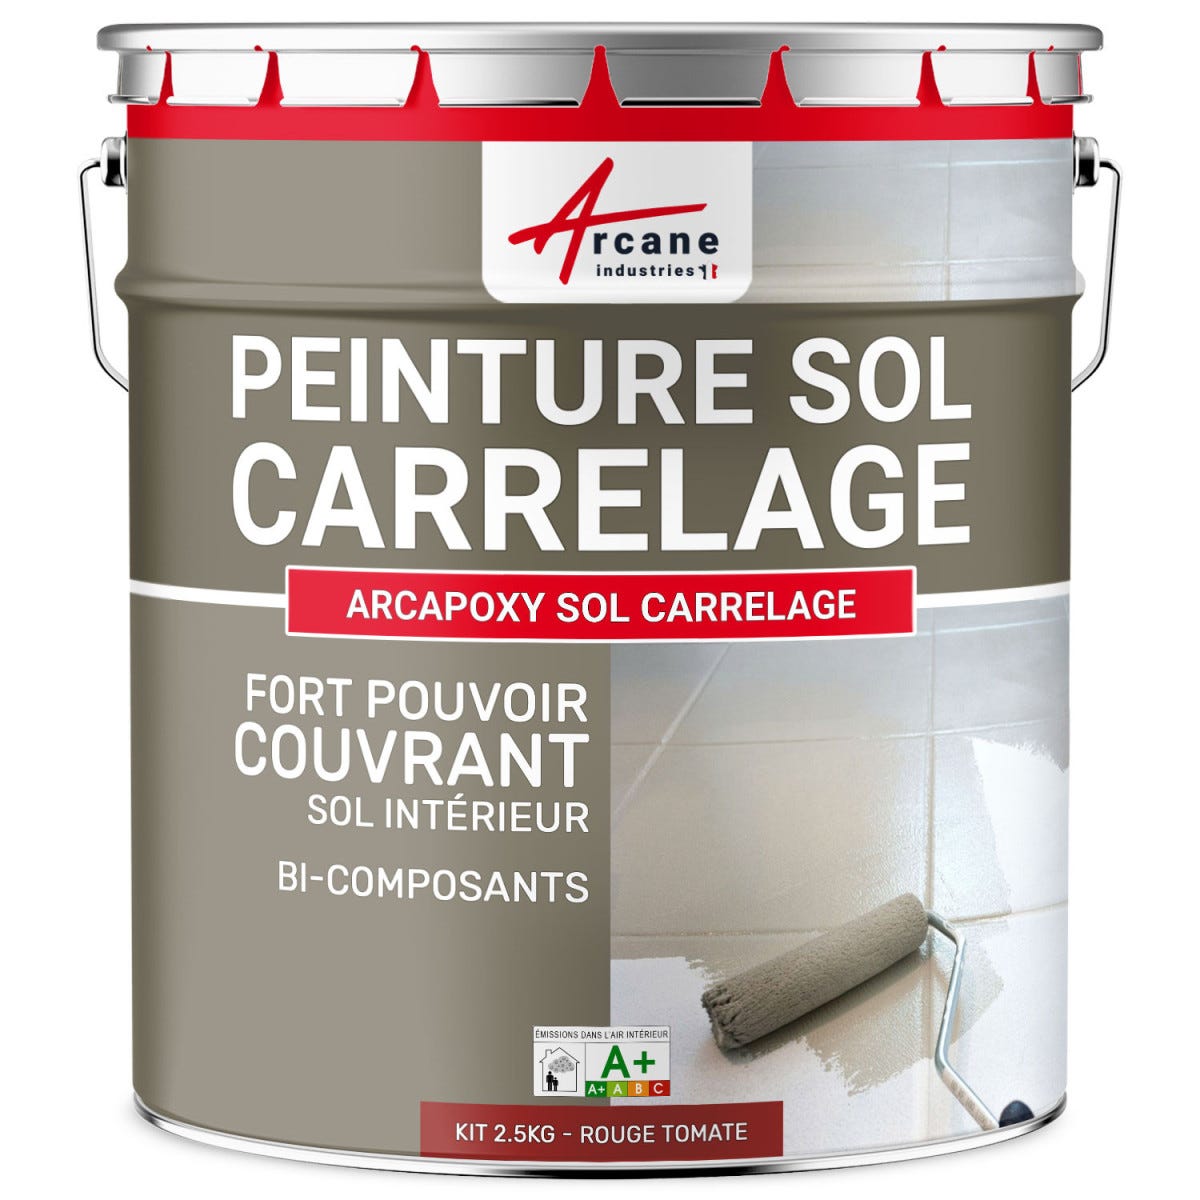 Peinture Résine Sol Carrelage - ARCAPOXY SOL CARRELAGE - 1 kg (jusqu'à 5 m² en 2 couches) - Rouge Tomate - RAL 3013 - ARCANE INDUSTRIES 0